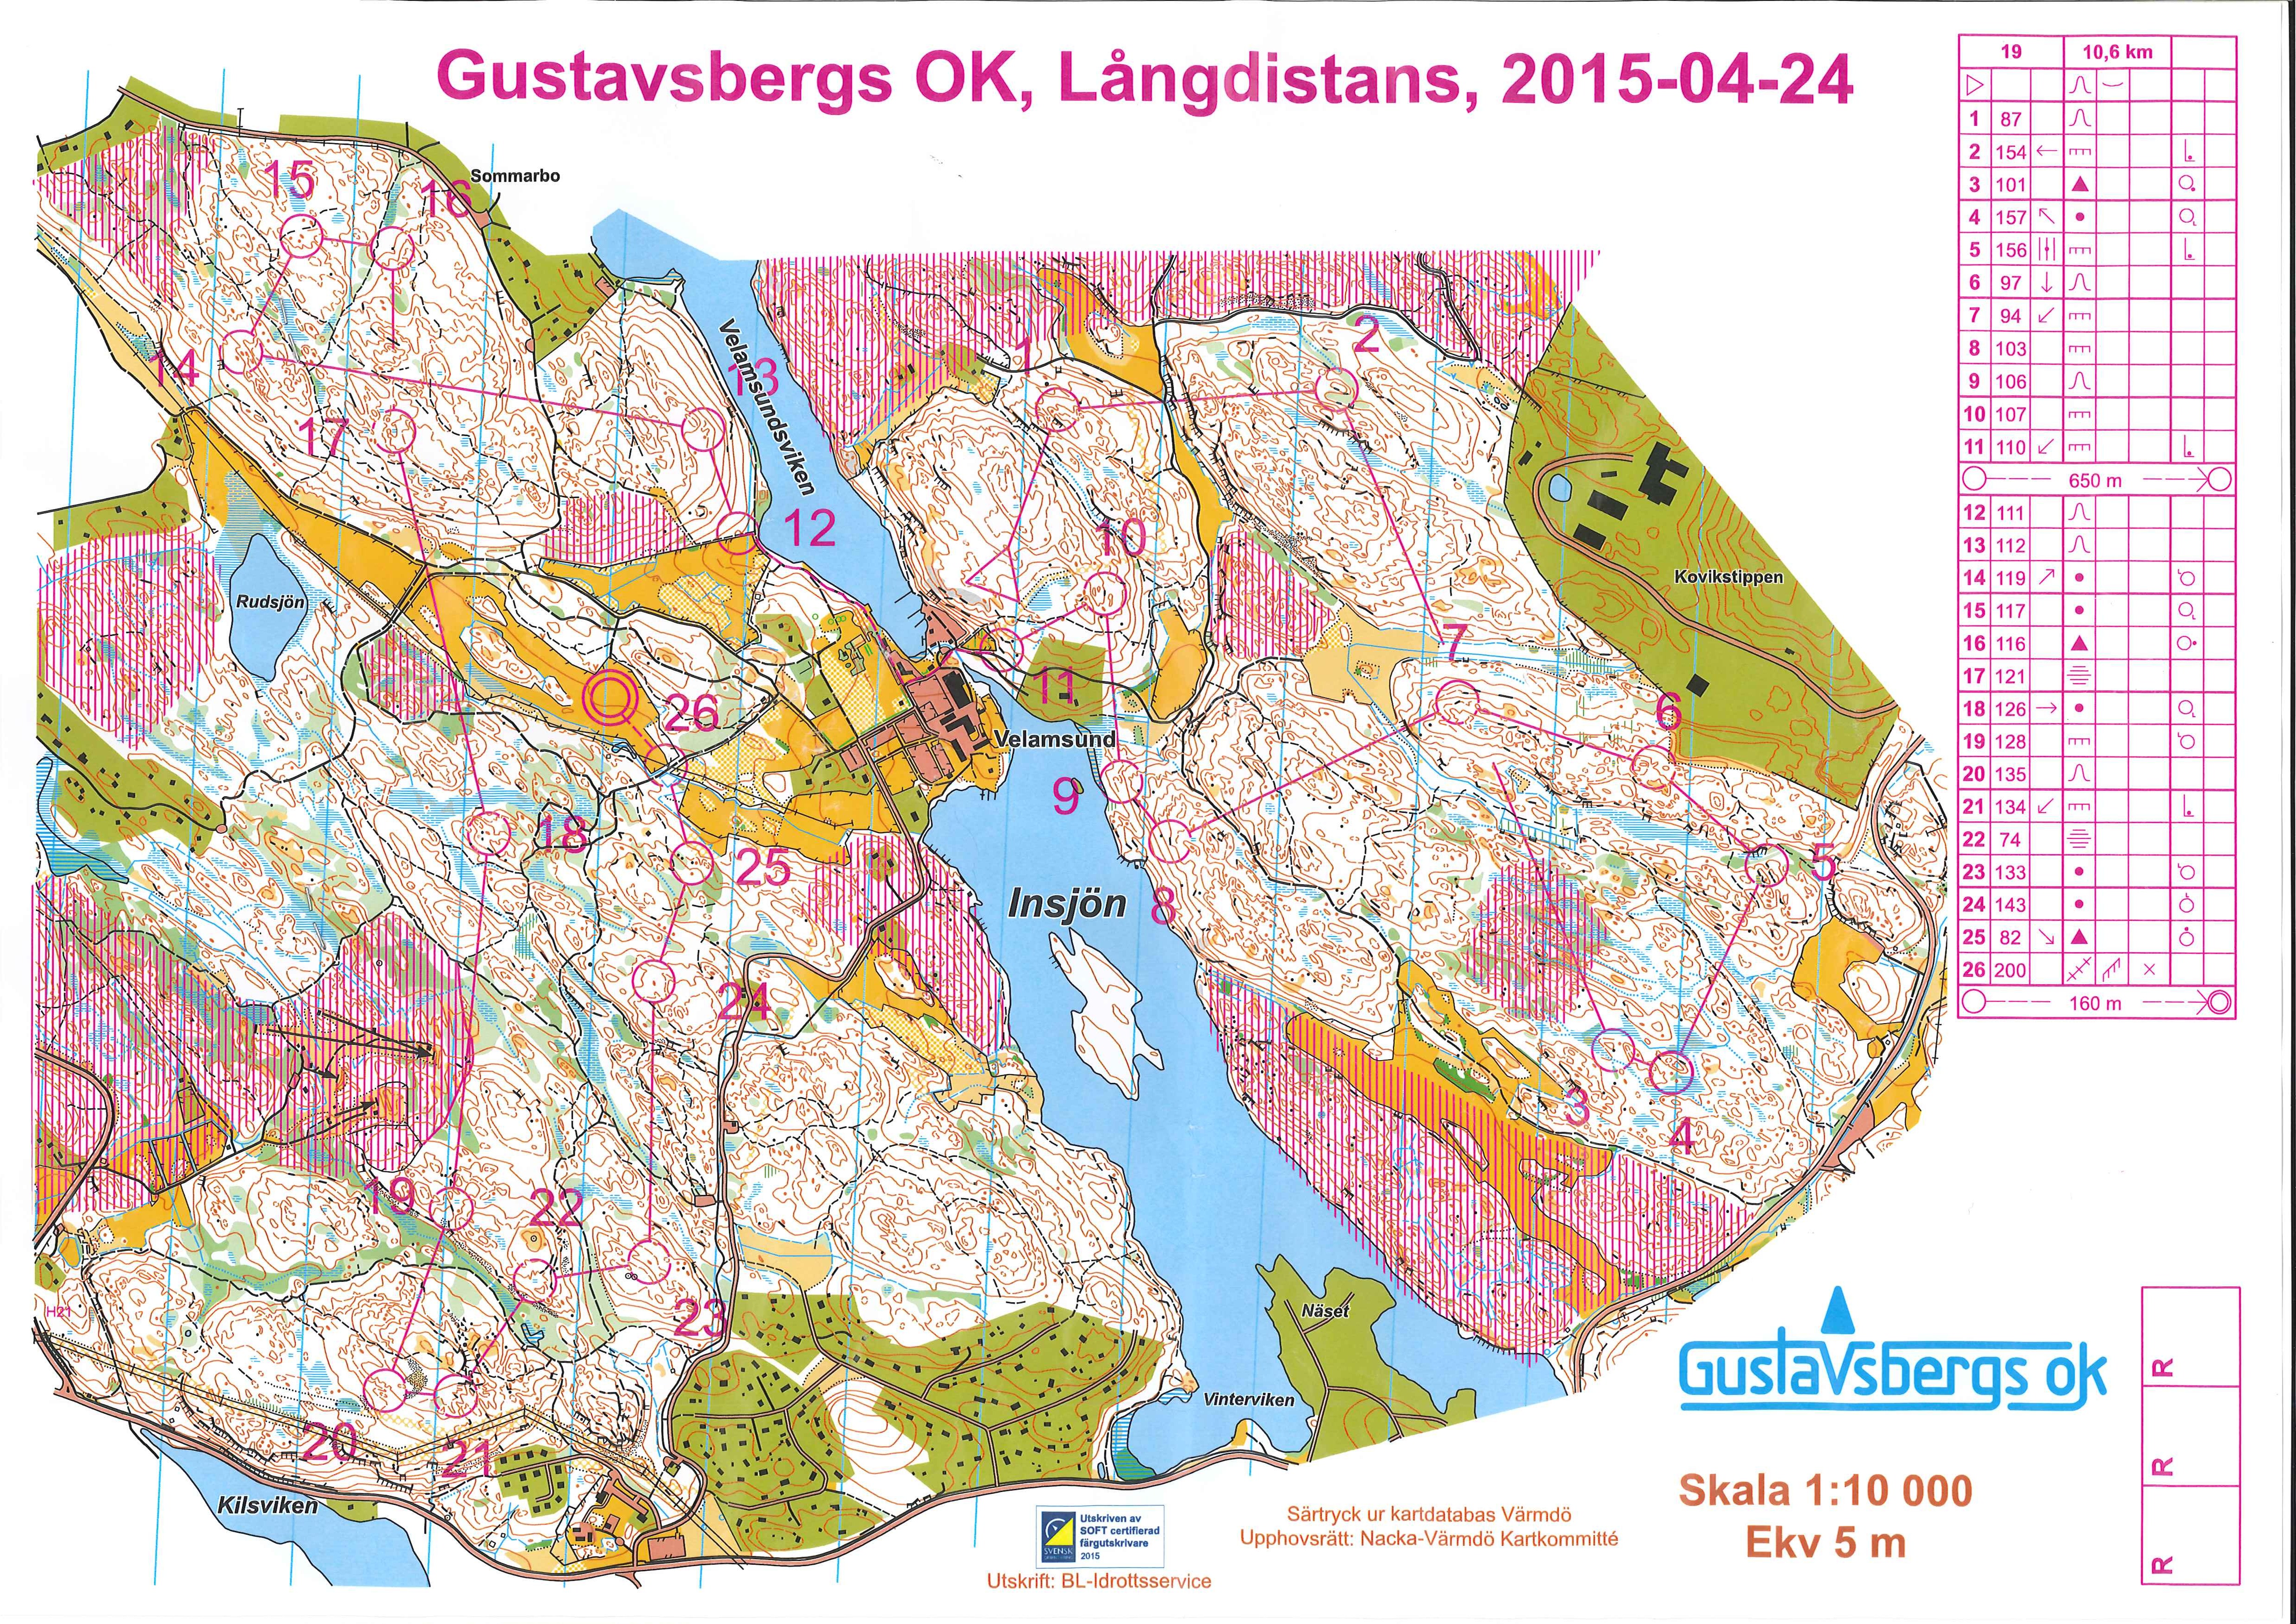 Gustavsberg (24-04-2015)